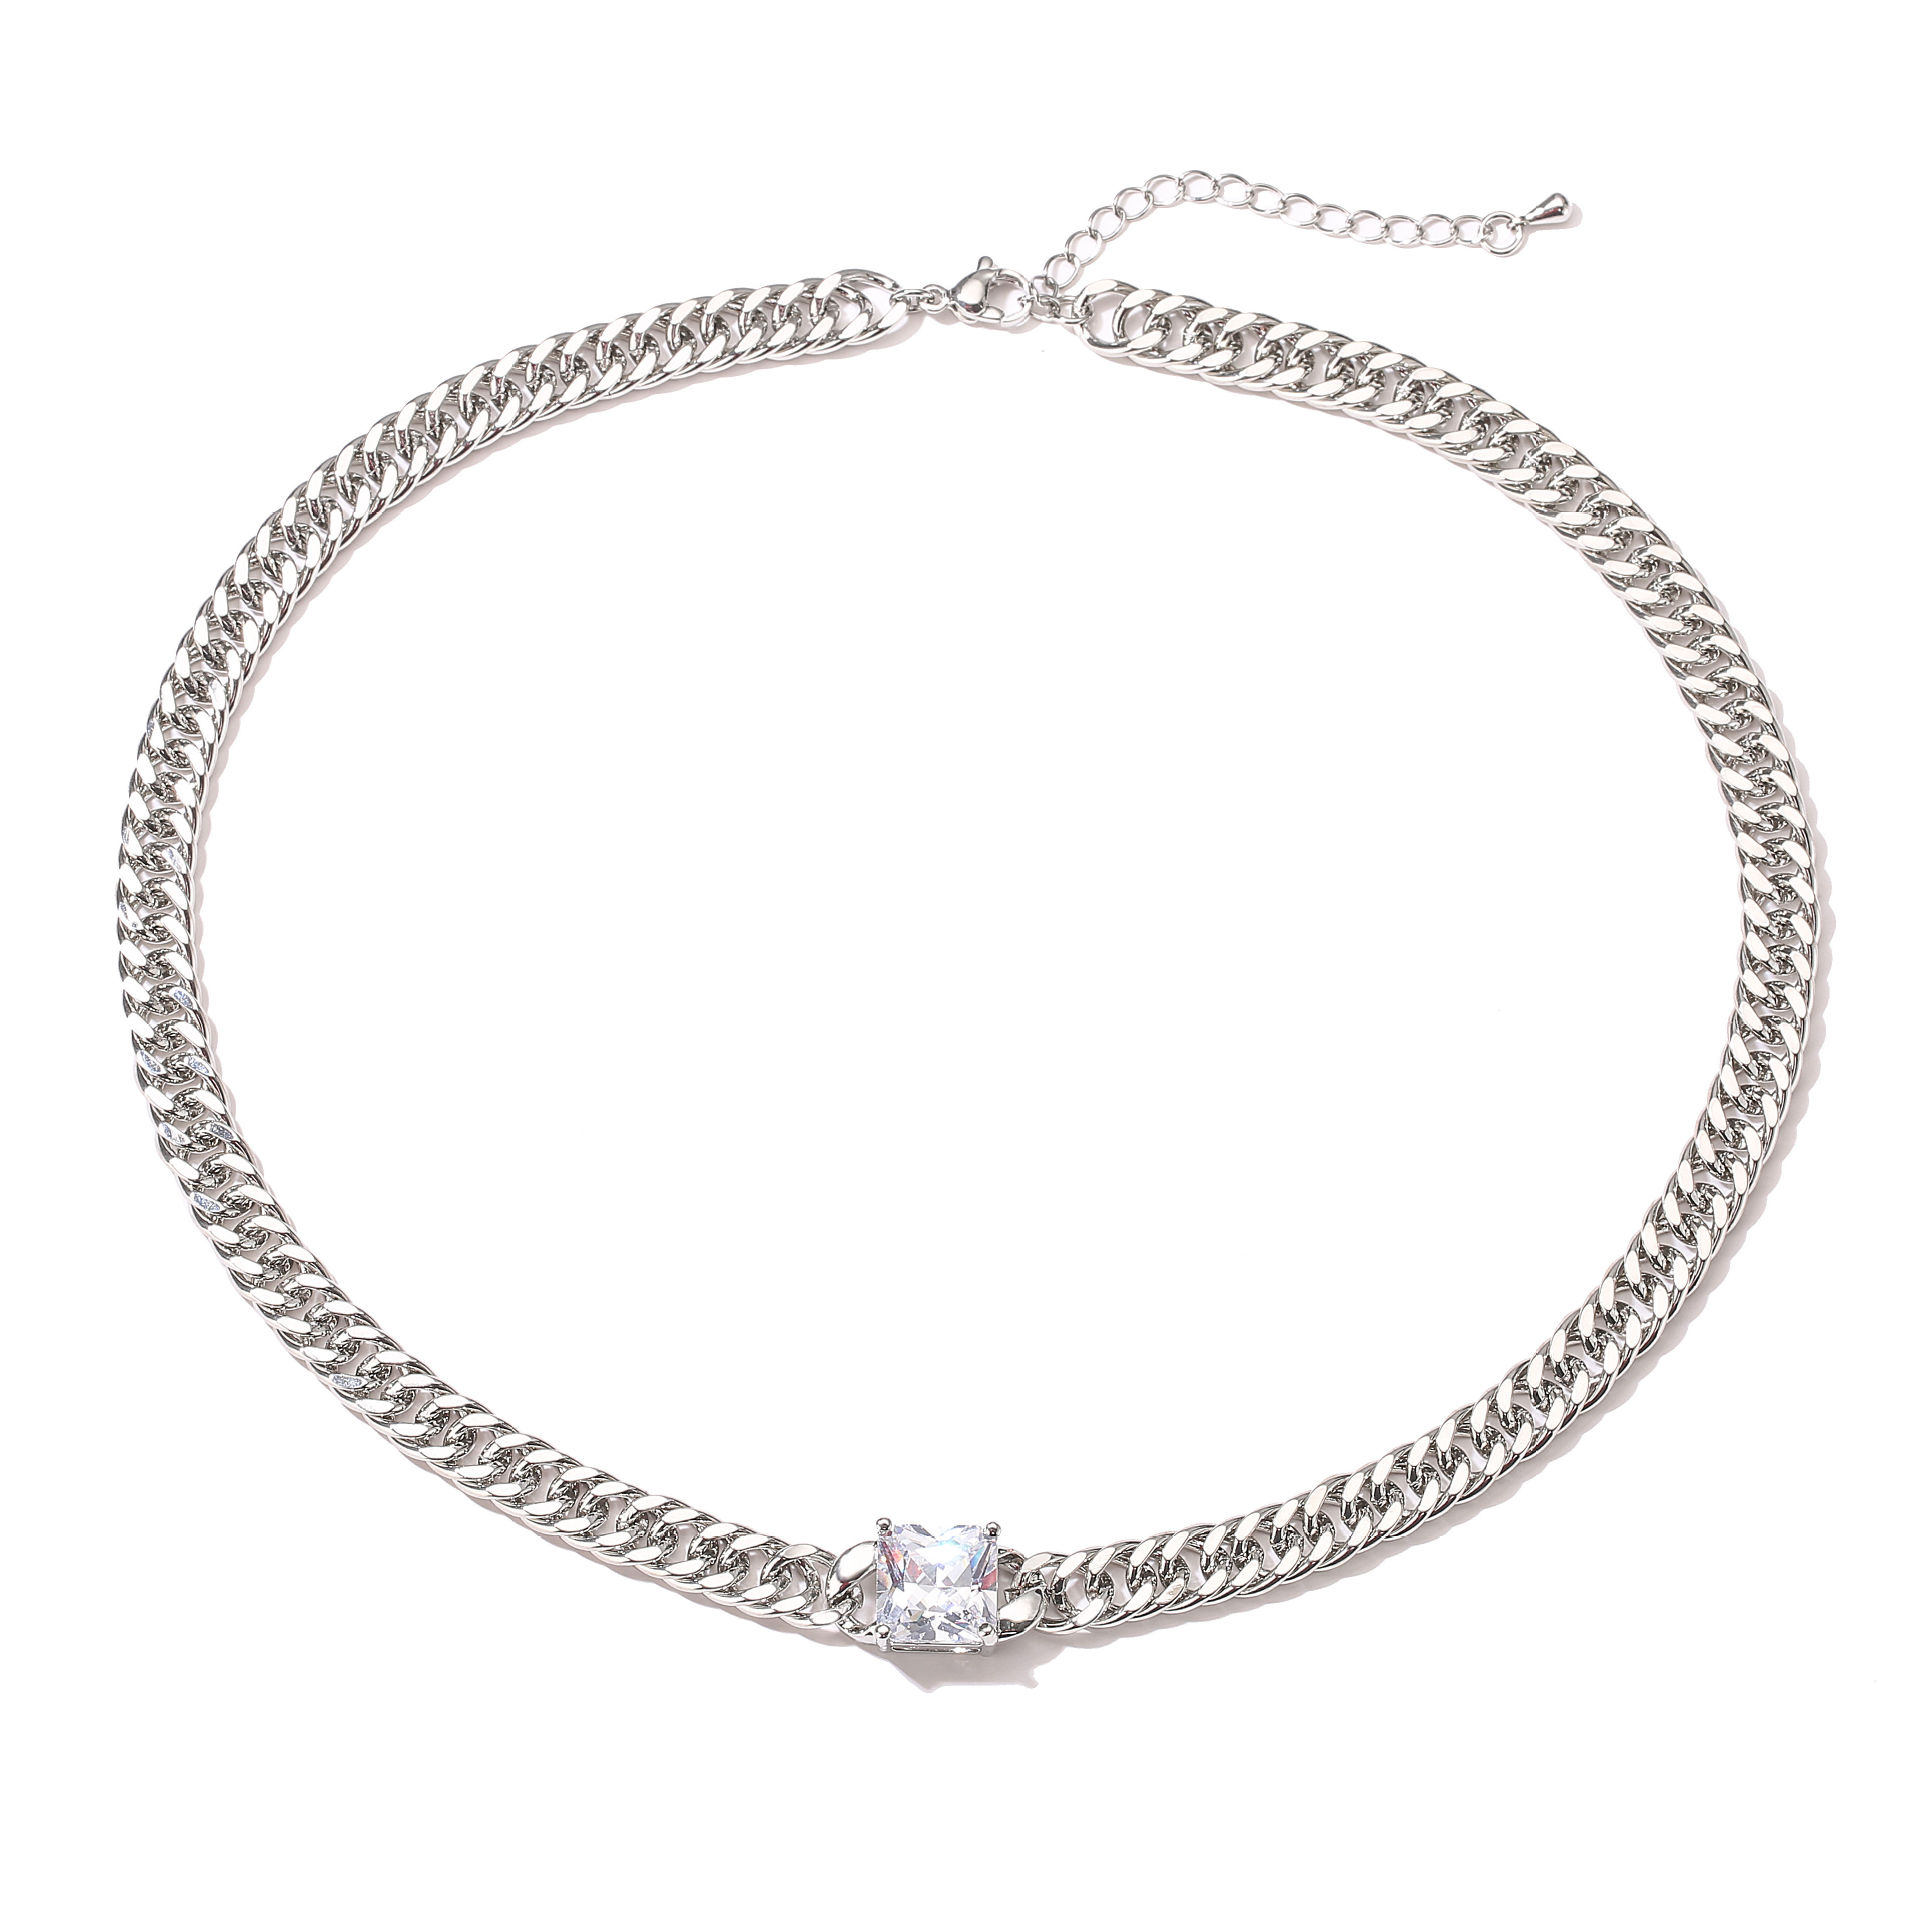 Platinum necklace